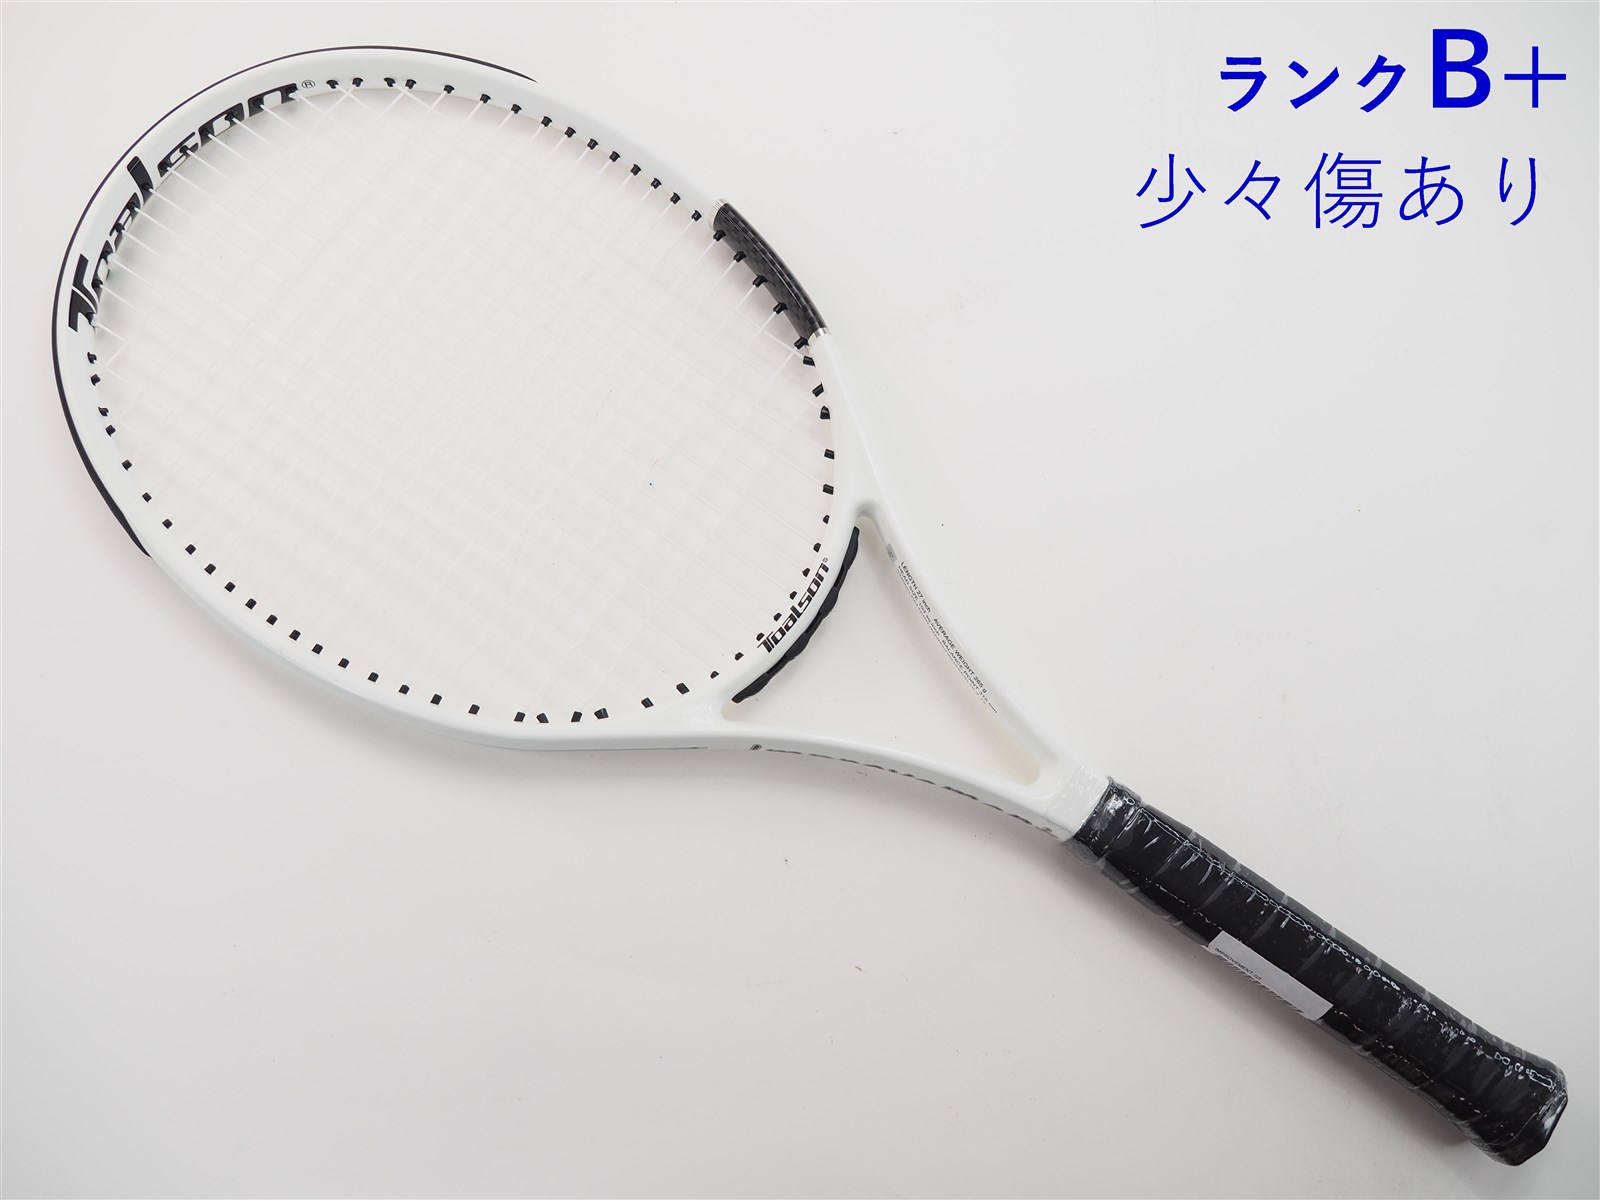 テニスラケット トアルソン インプローブメント (G2)TOALSON